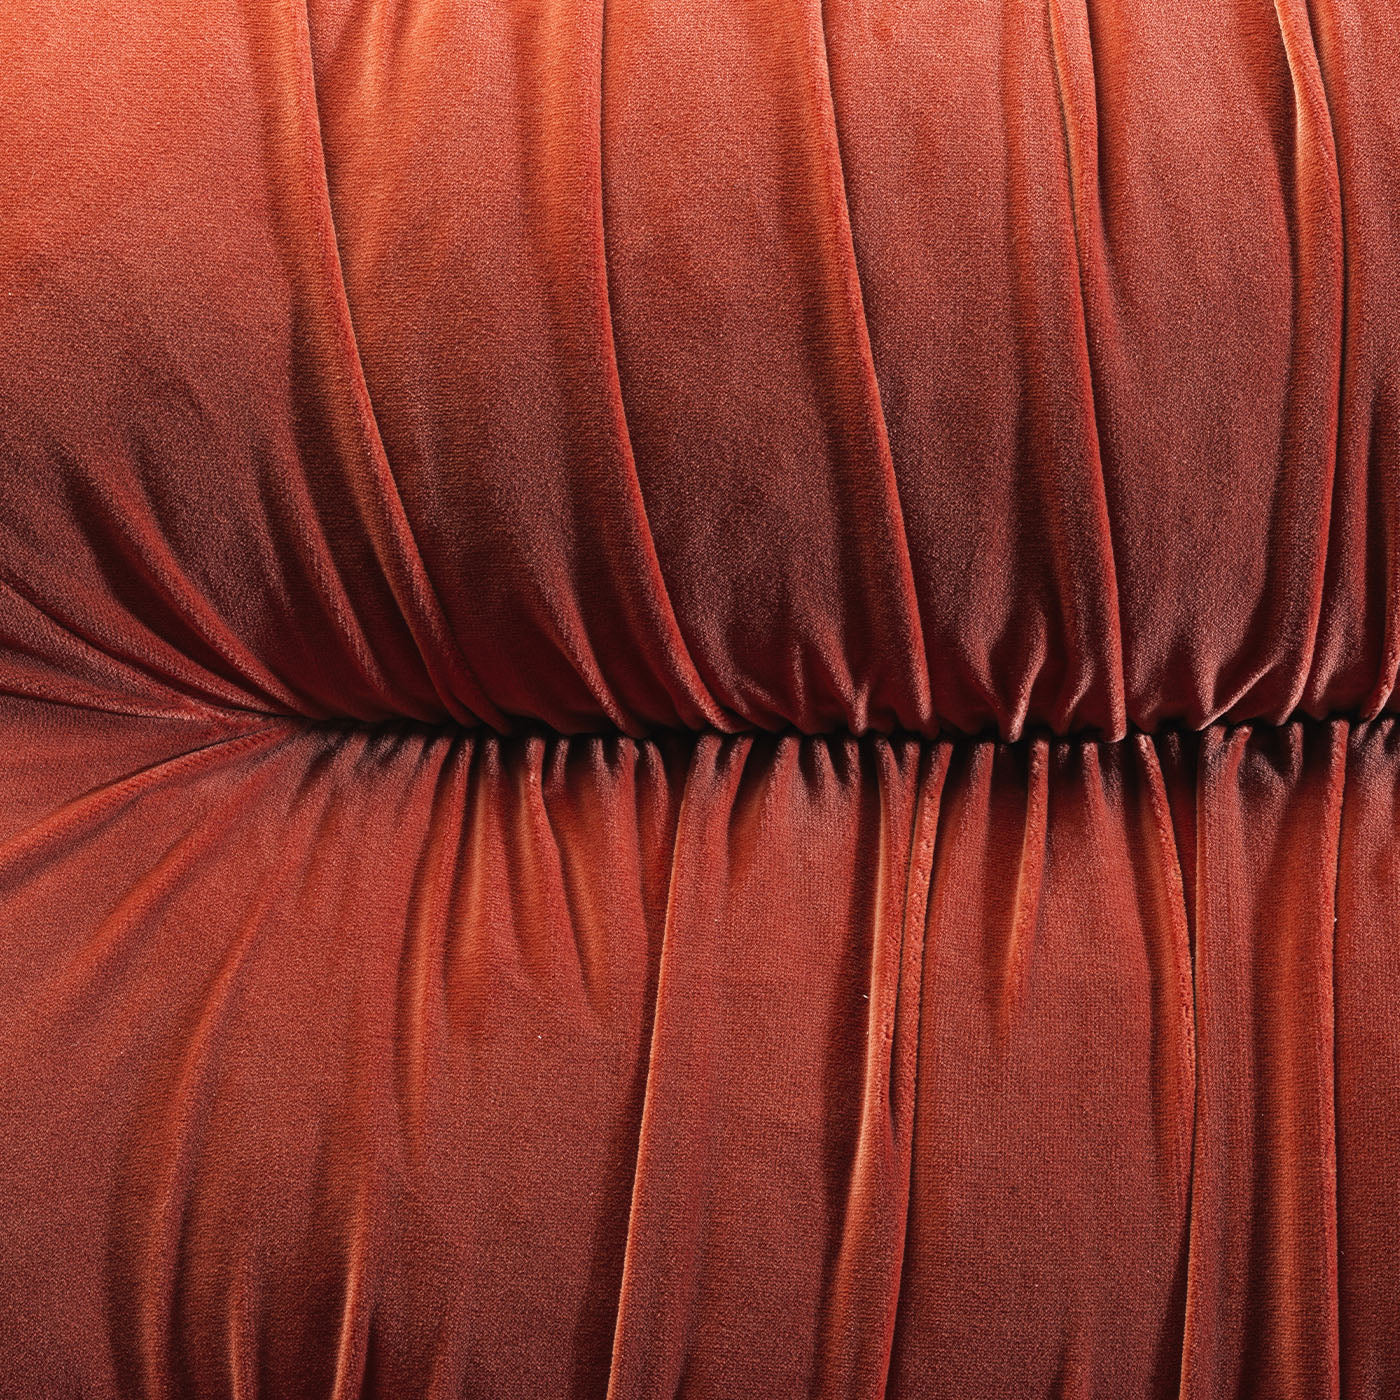 Sofá modular de tela naranja Mambo de Lorenza Bozzoli - Vista alternativa 3